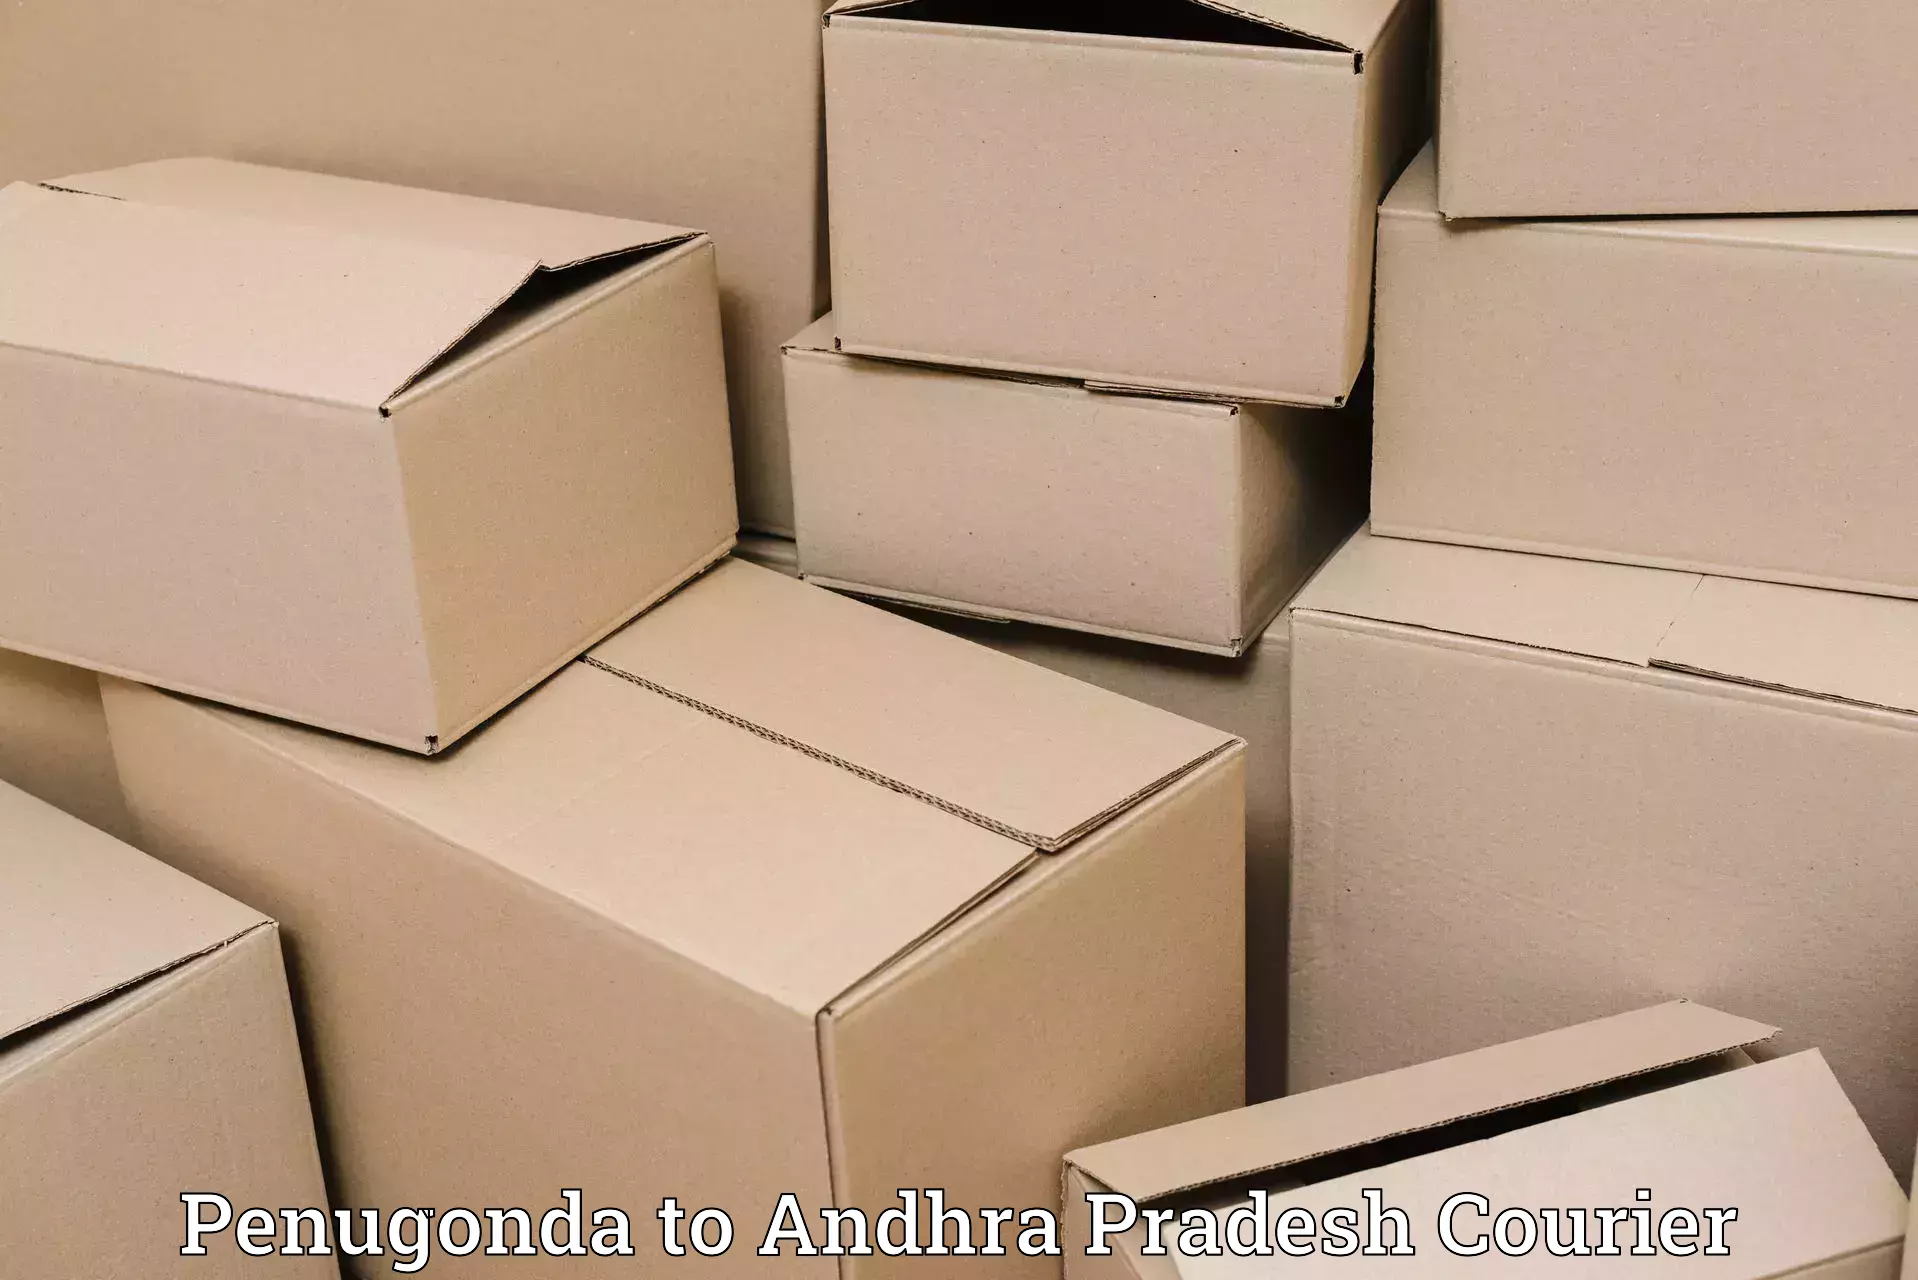 Cargo delivery service Penugonda to Machilipatnam